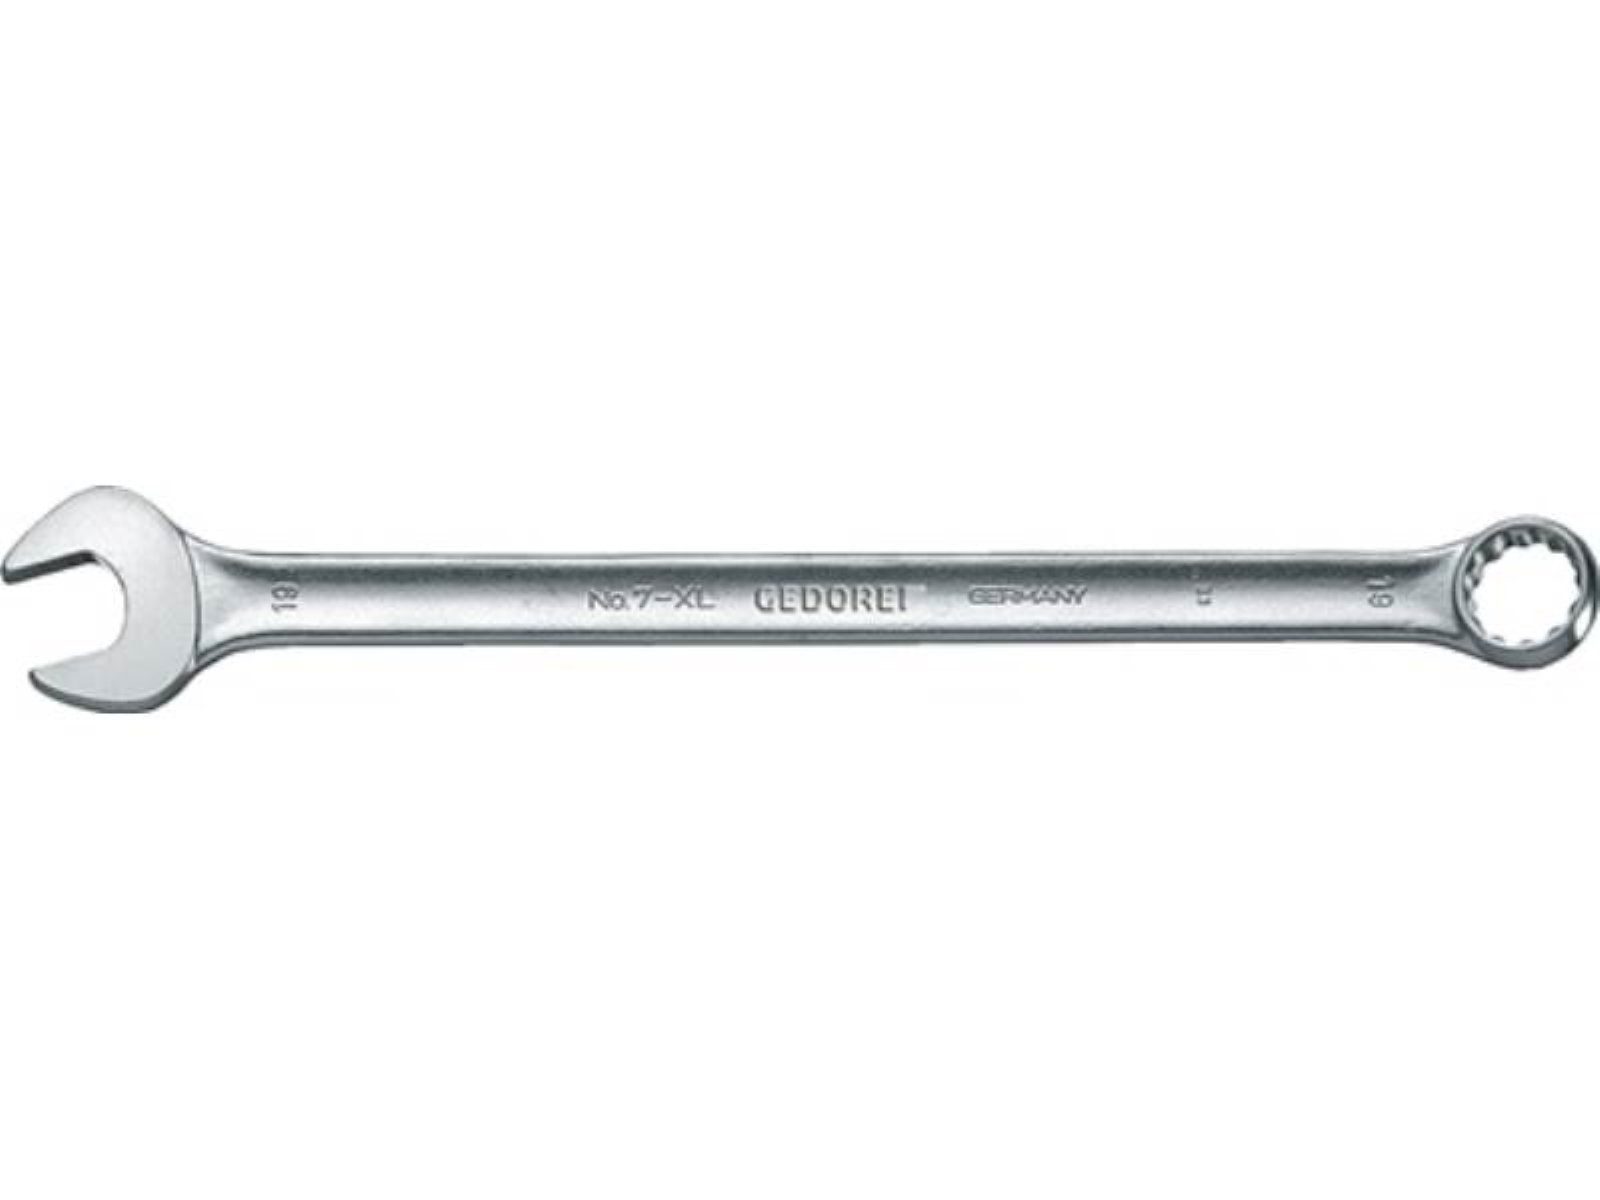 Gedore Maulschlüssel Ringmaulschlüssel 7 XL L.550mm CV-Stahl A Form ext.lang GEDOR SW 36mm